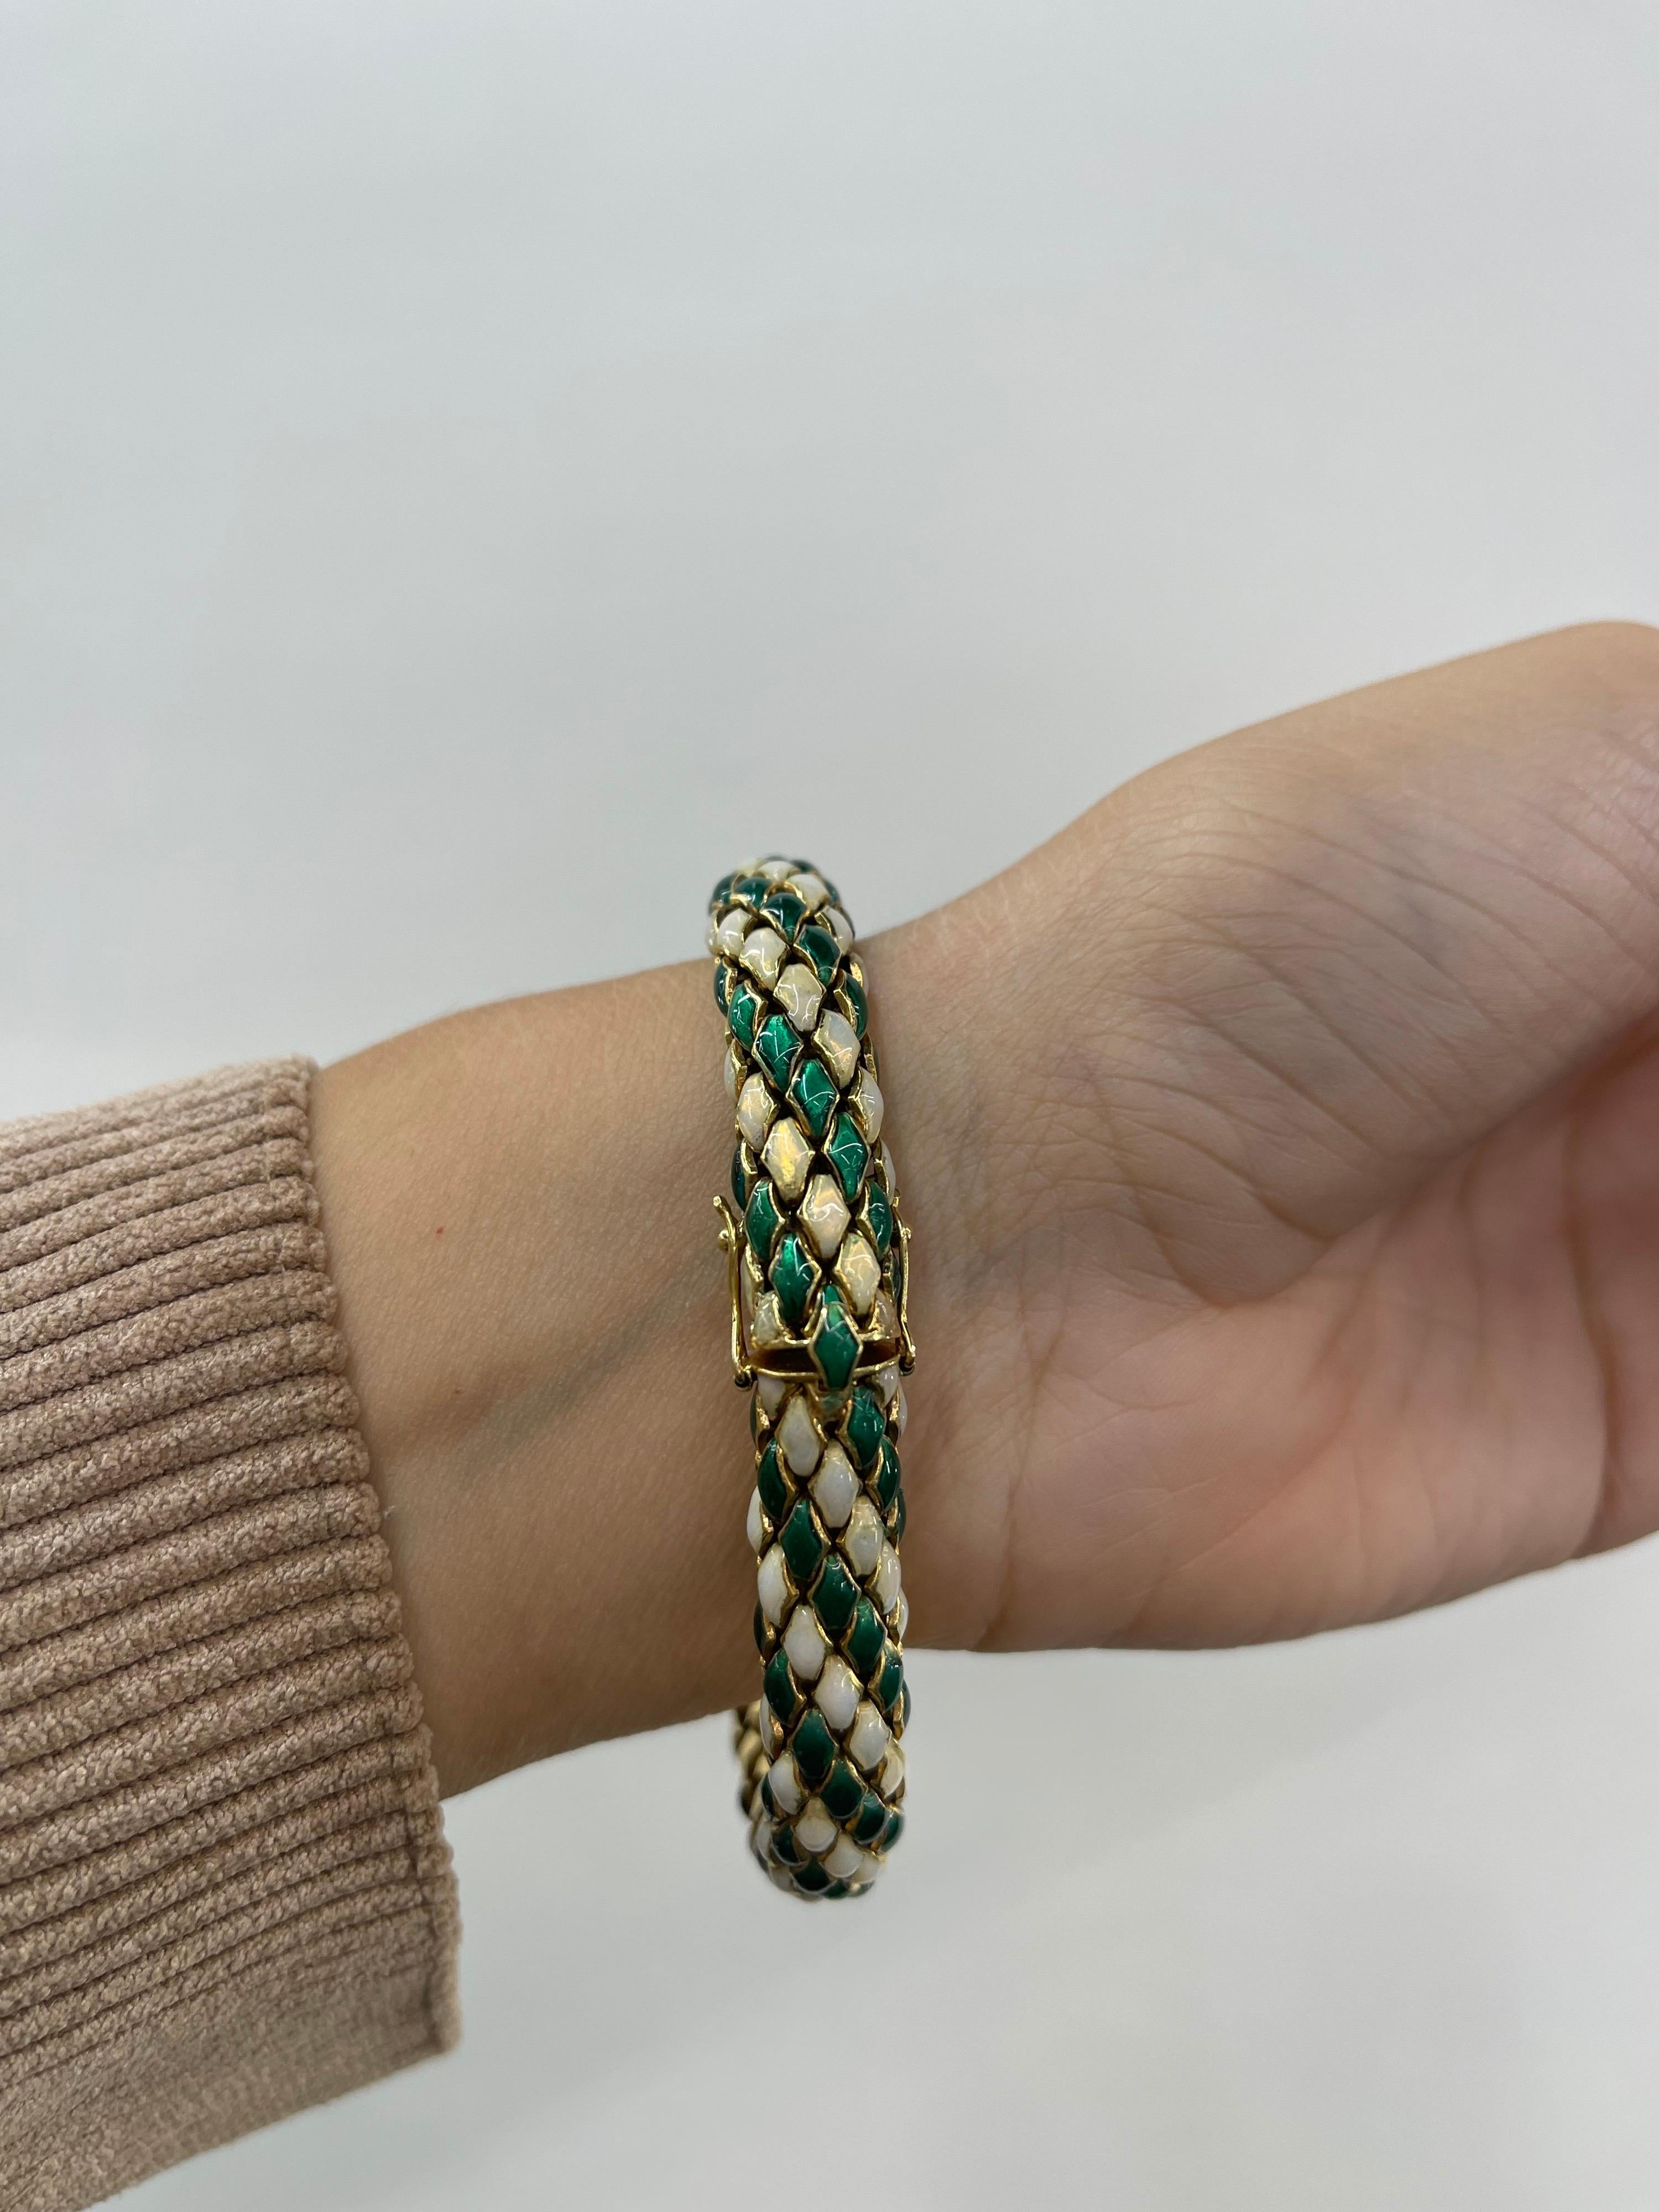 Enamel Green and White flexible Bracelet looks like snake skin